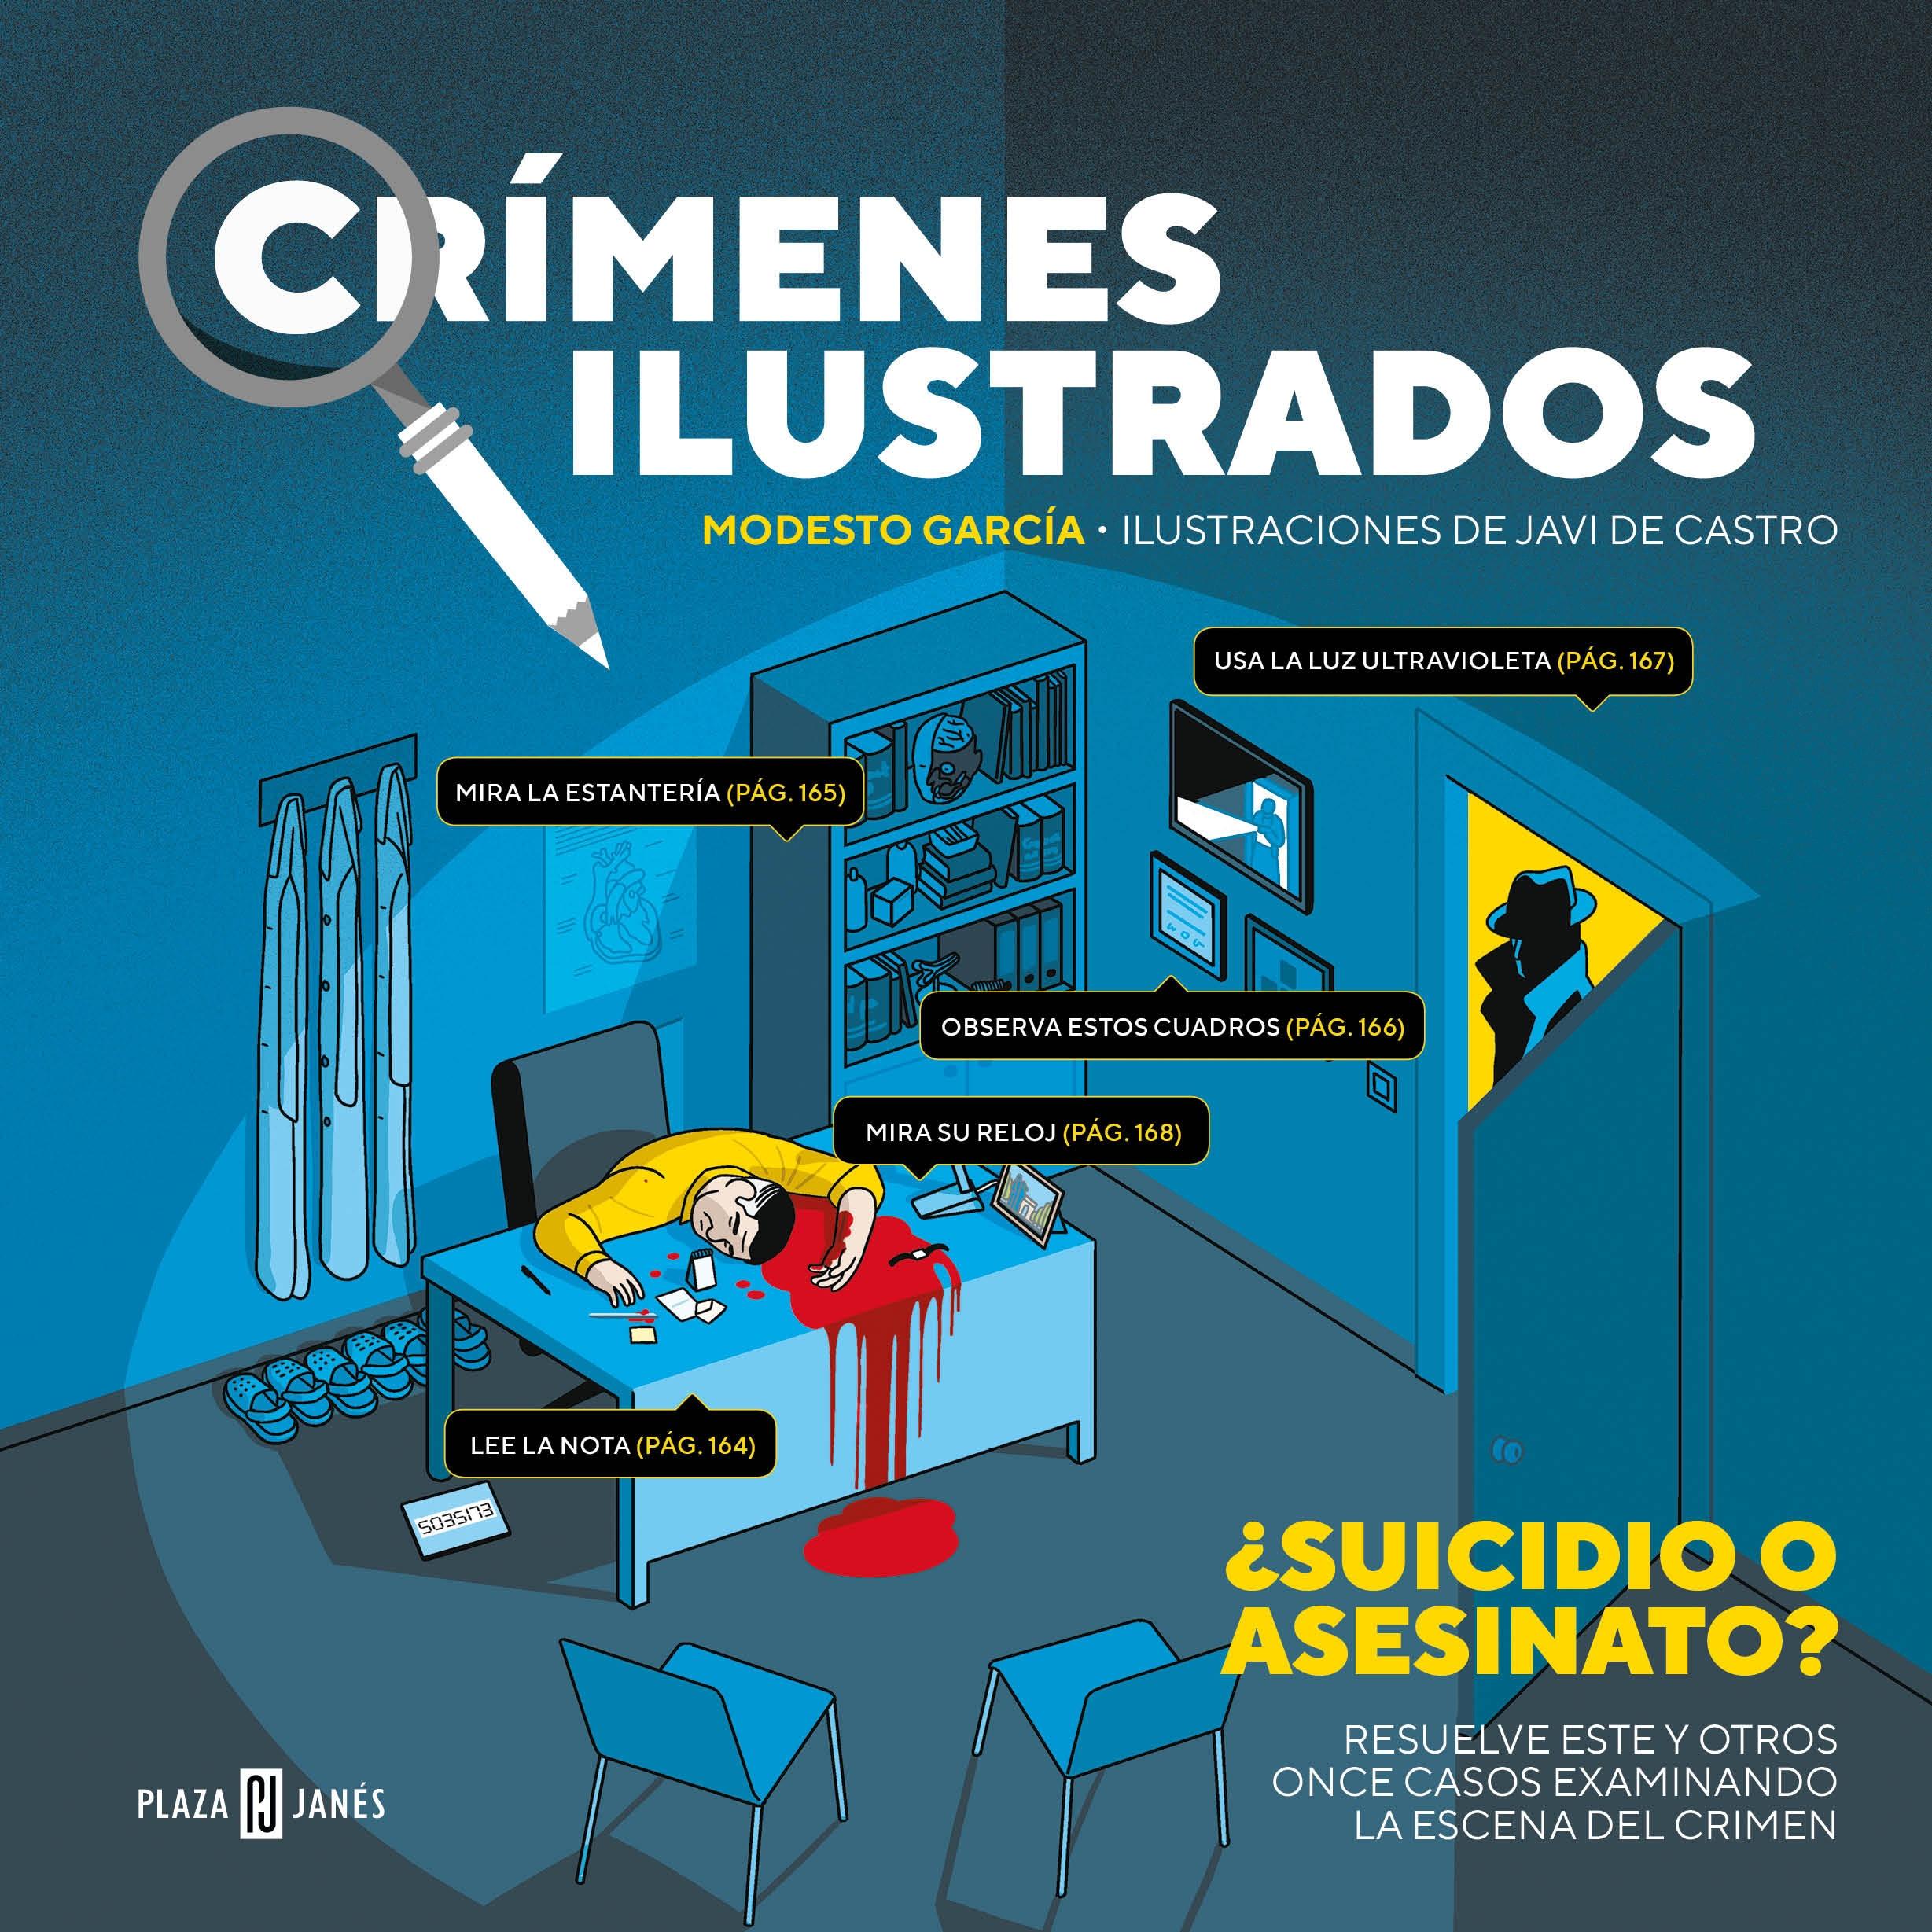 Crímenes ilustrados "Resuelve los casos examinando la escena del crimen". 